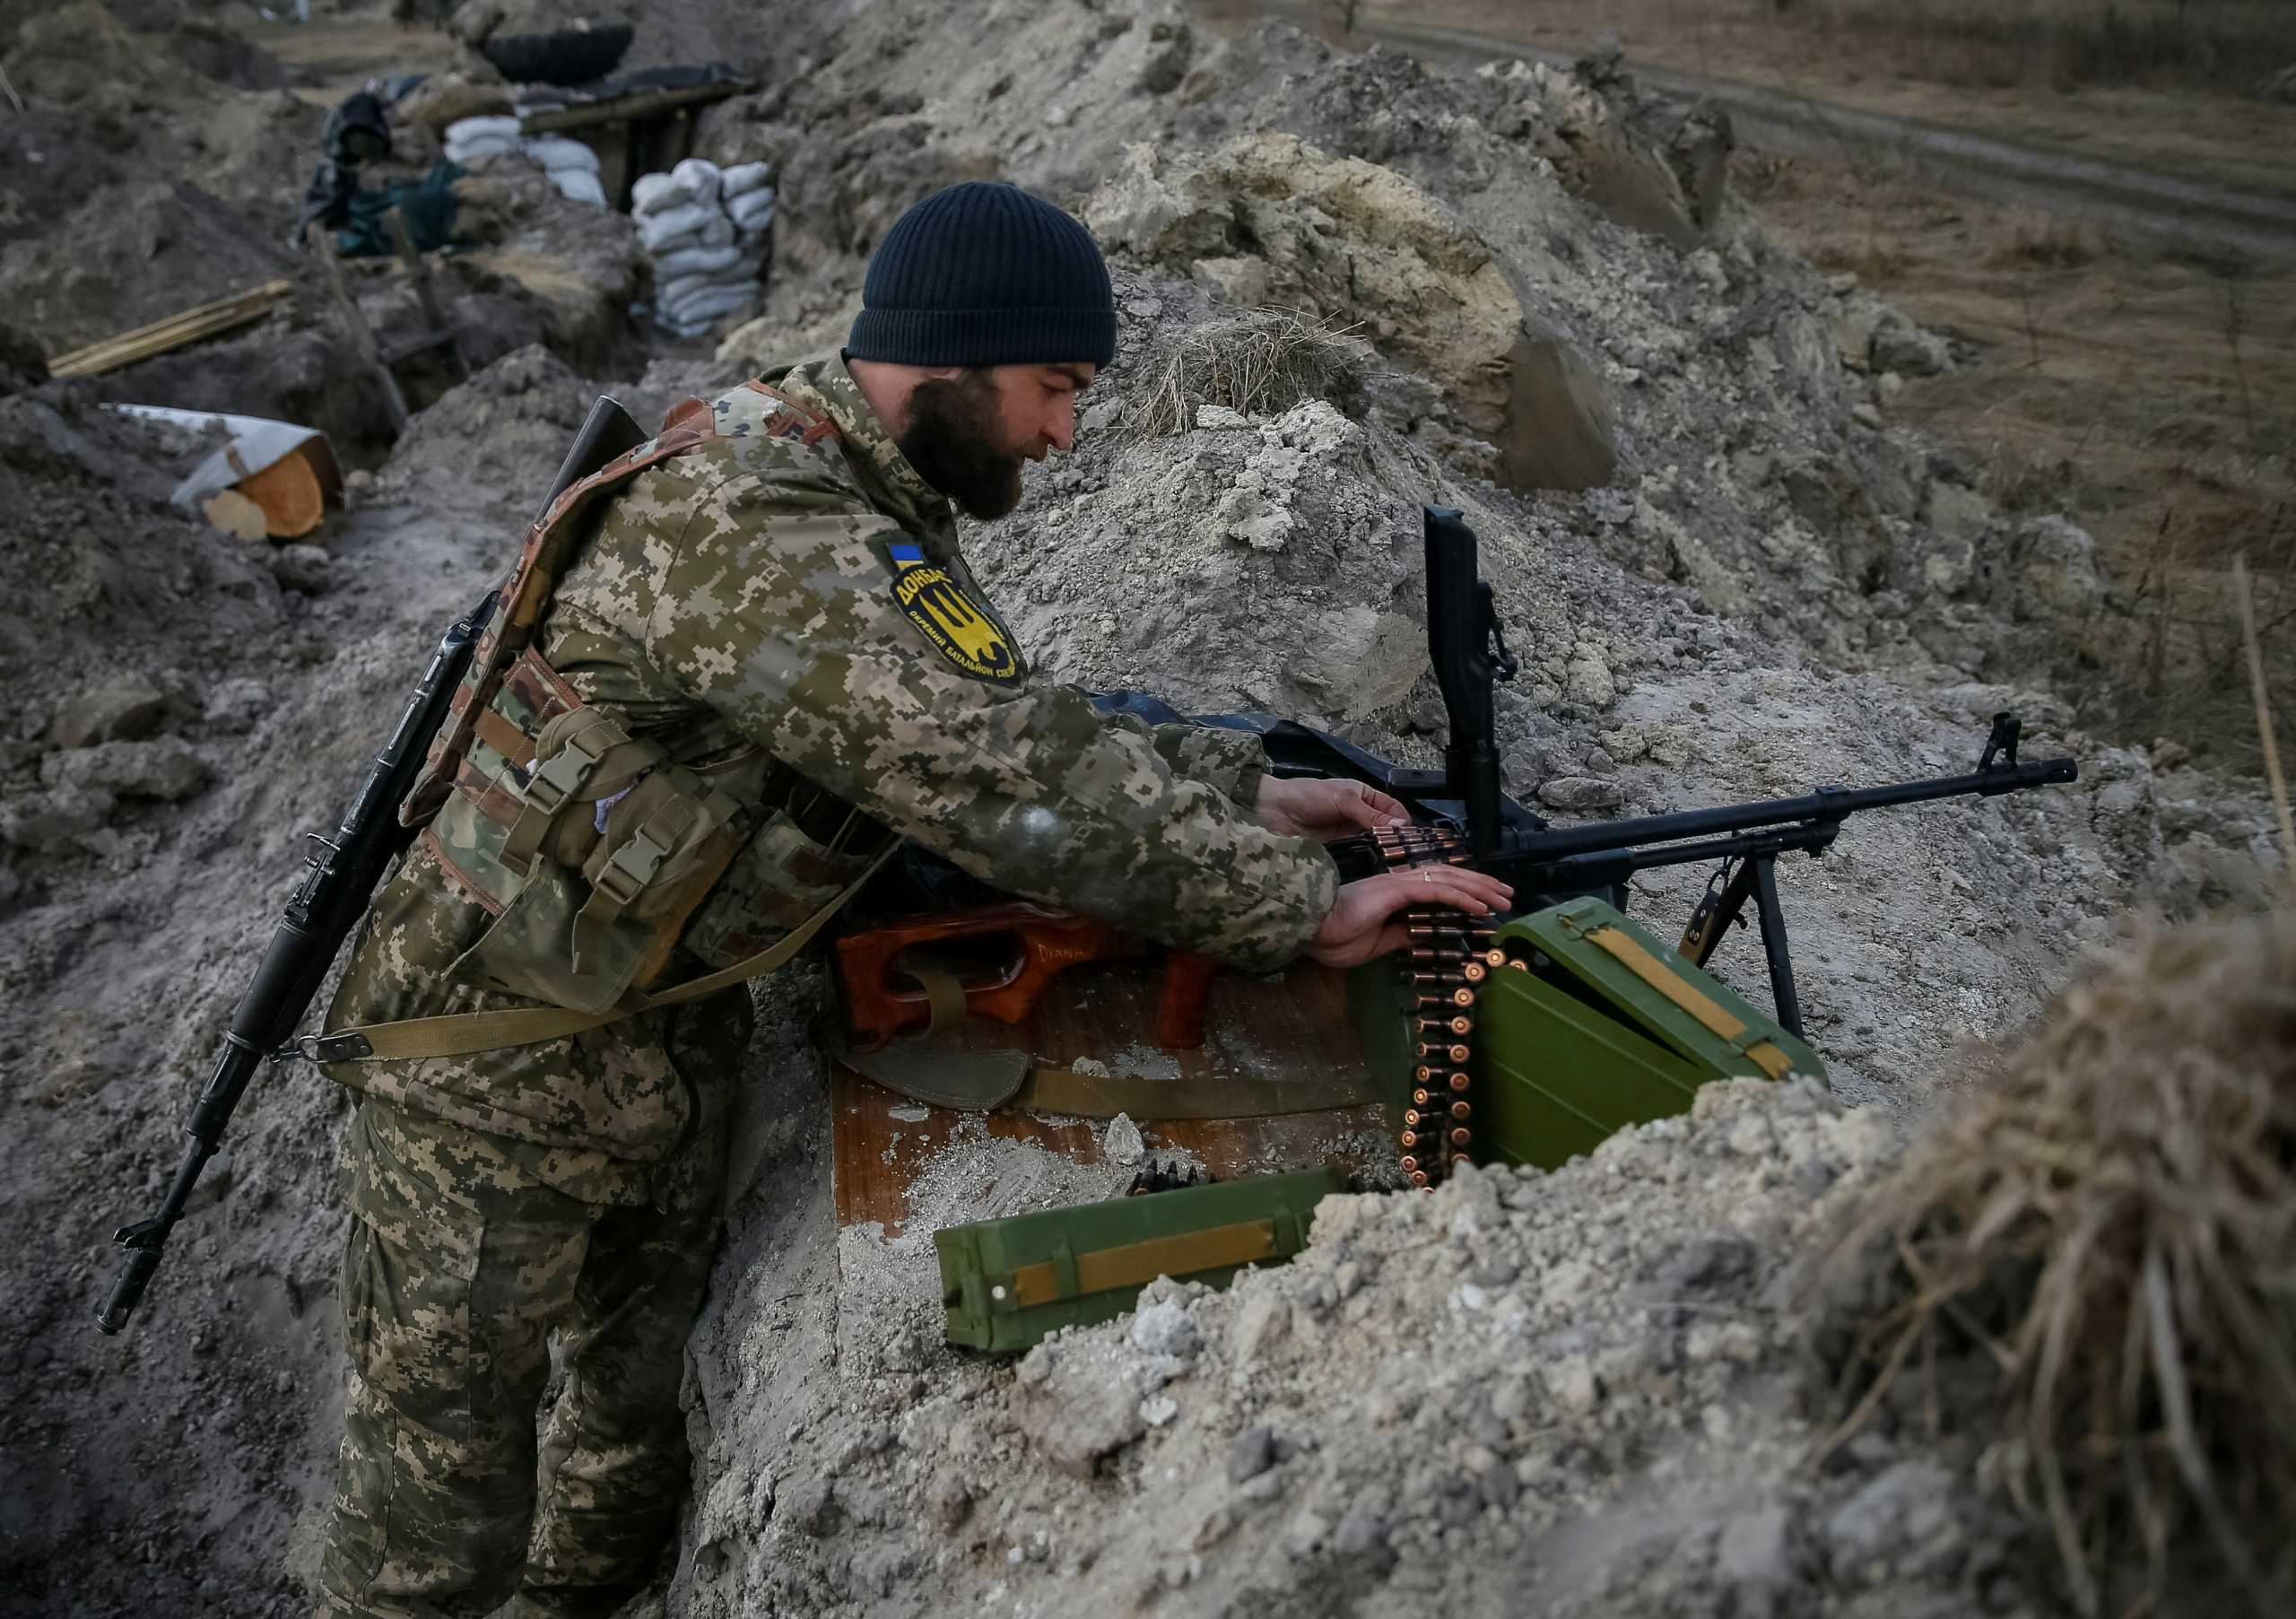 Πόλεμος στην Ουκρανία: Η Γερμανία δεν έχει αποκαλύψει όλα τα όπλα που έχει στείλει για βοήθεια